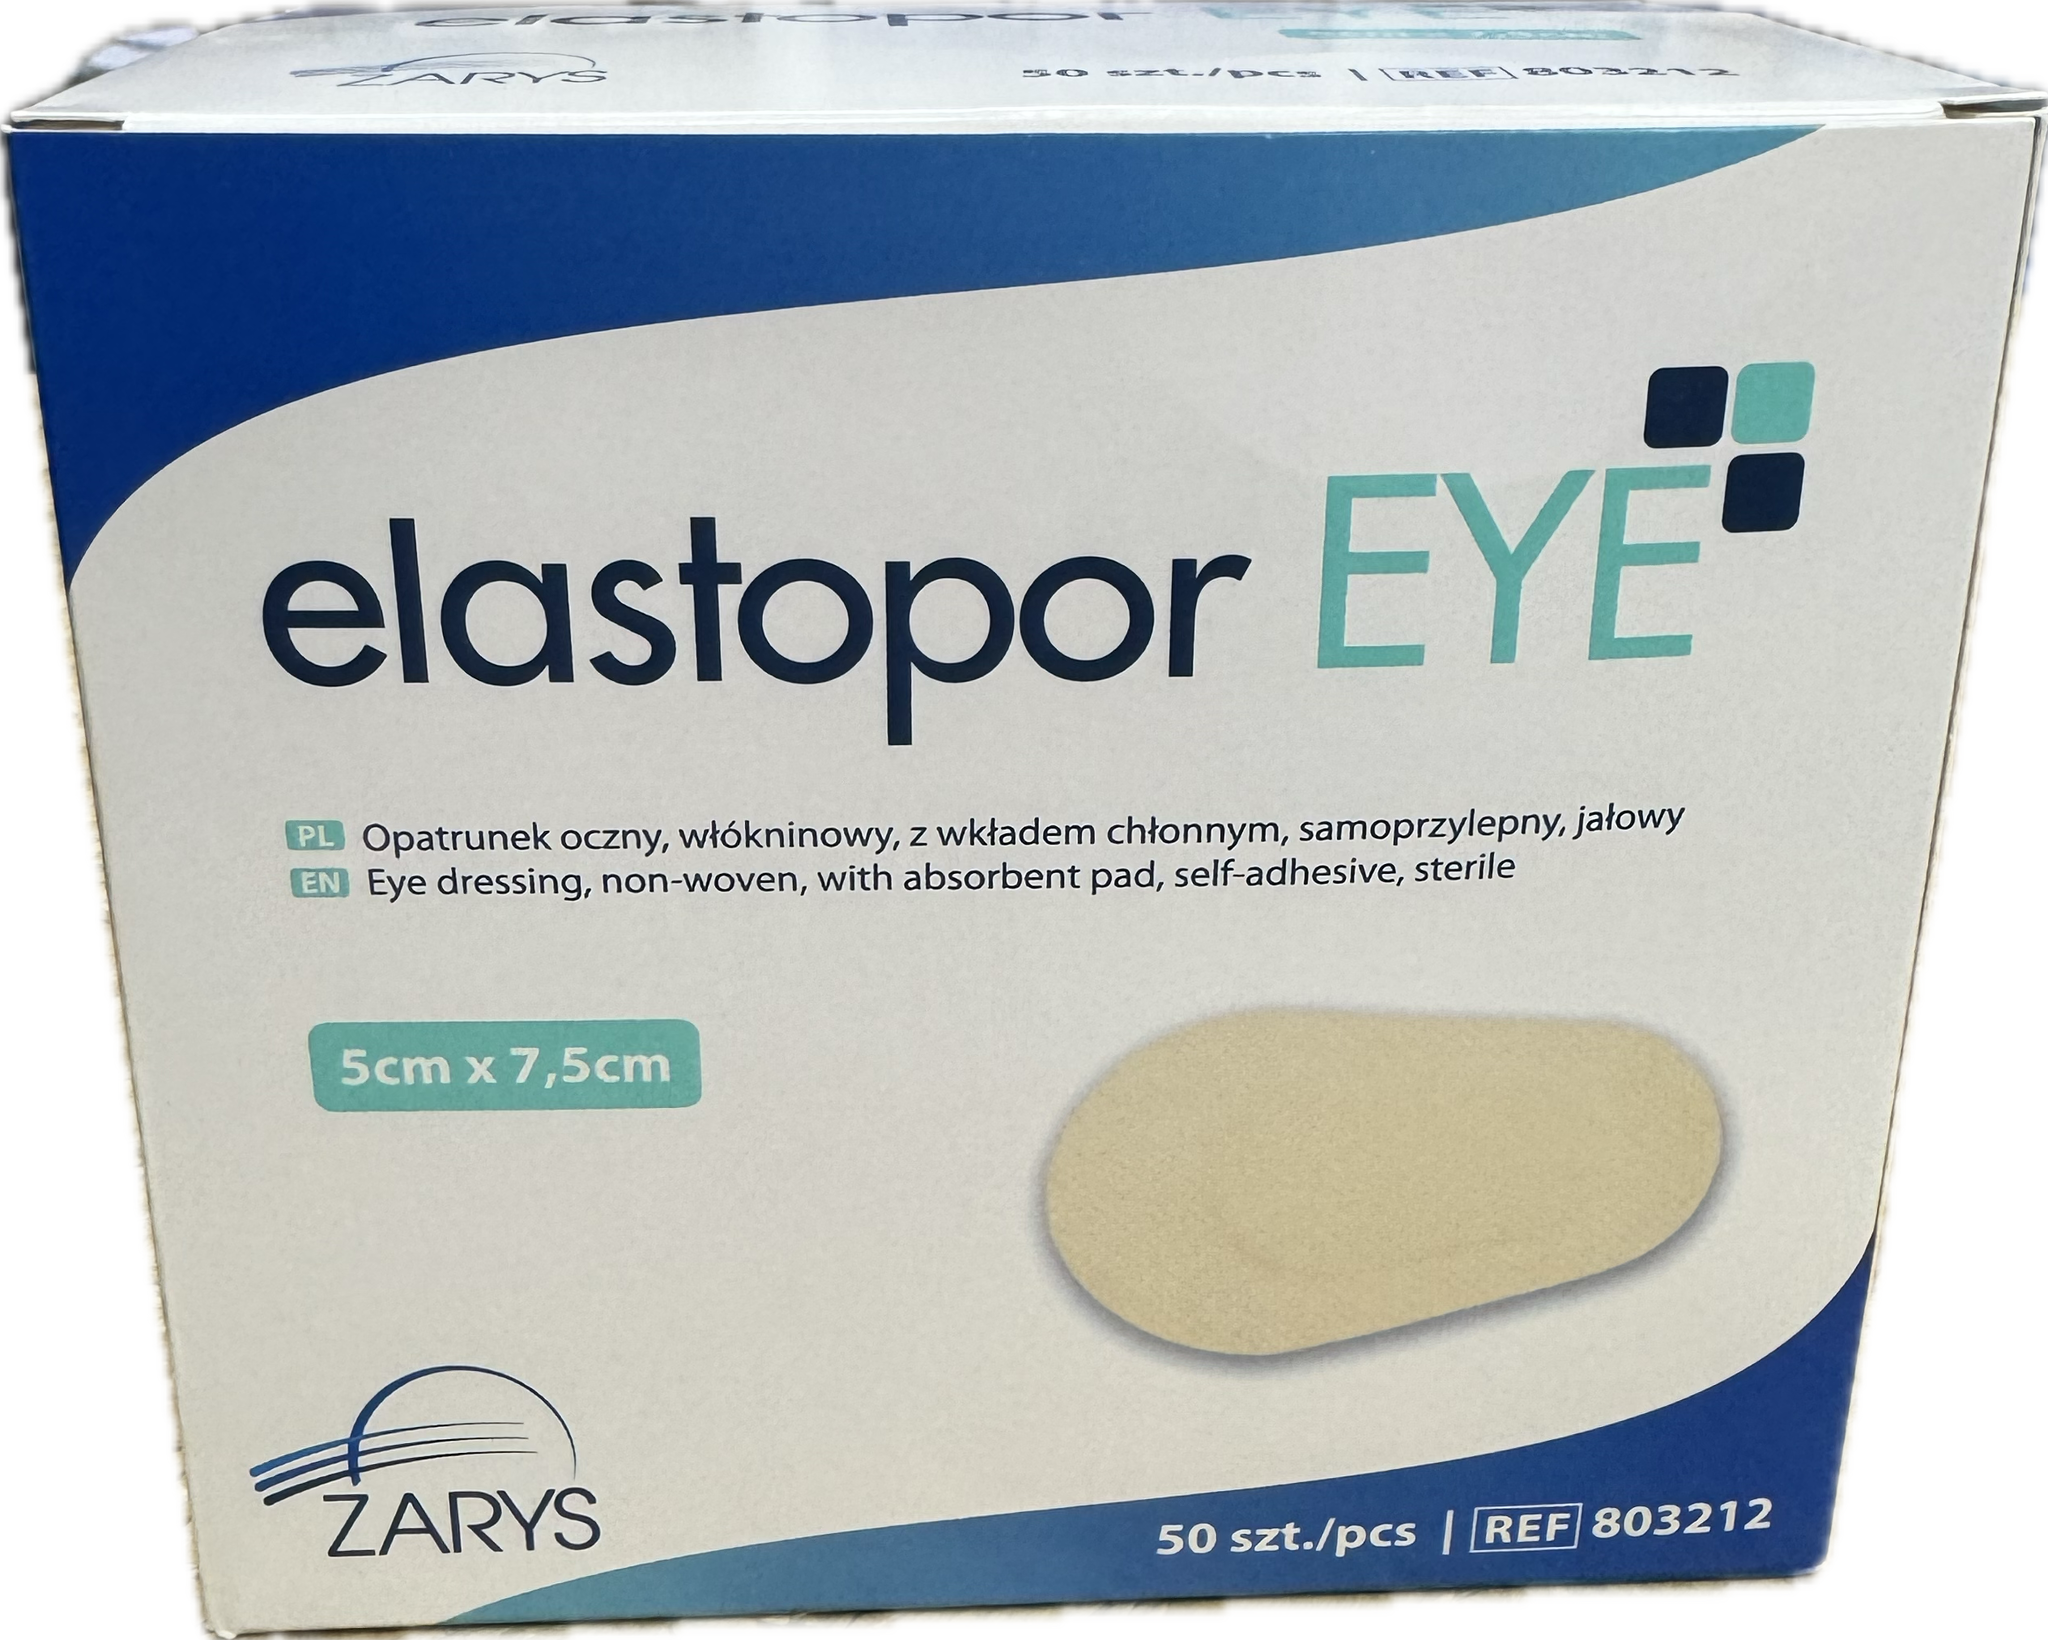 Elastopor EYE 5cm x 7,5cm, opatrunek oczny, włókninowy, z wkładem chłonnym, samoprzylepny, jałowy | ZARYS | 1 szt.